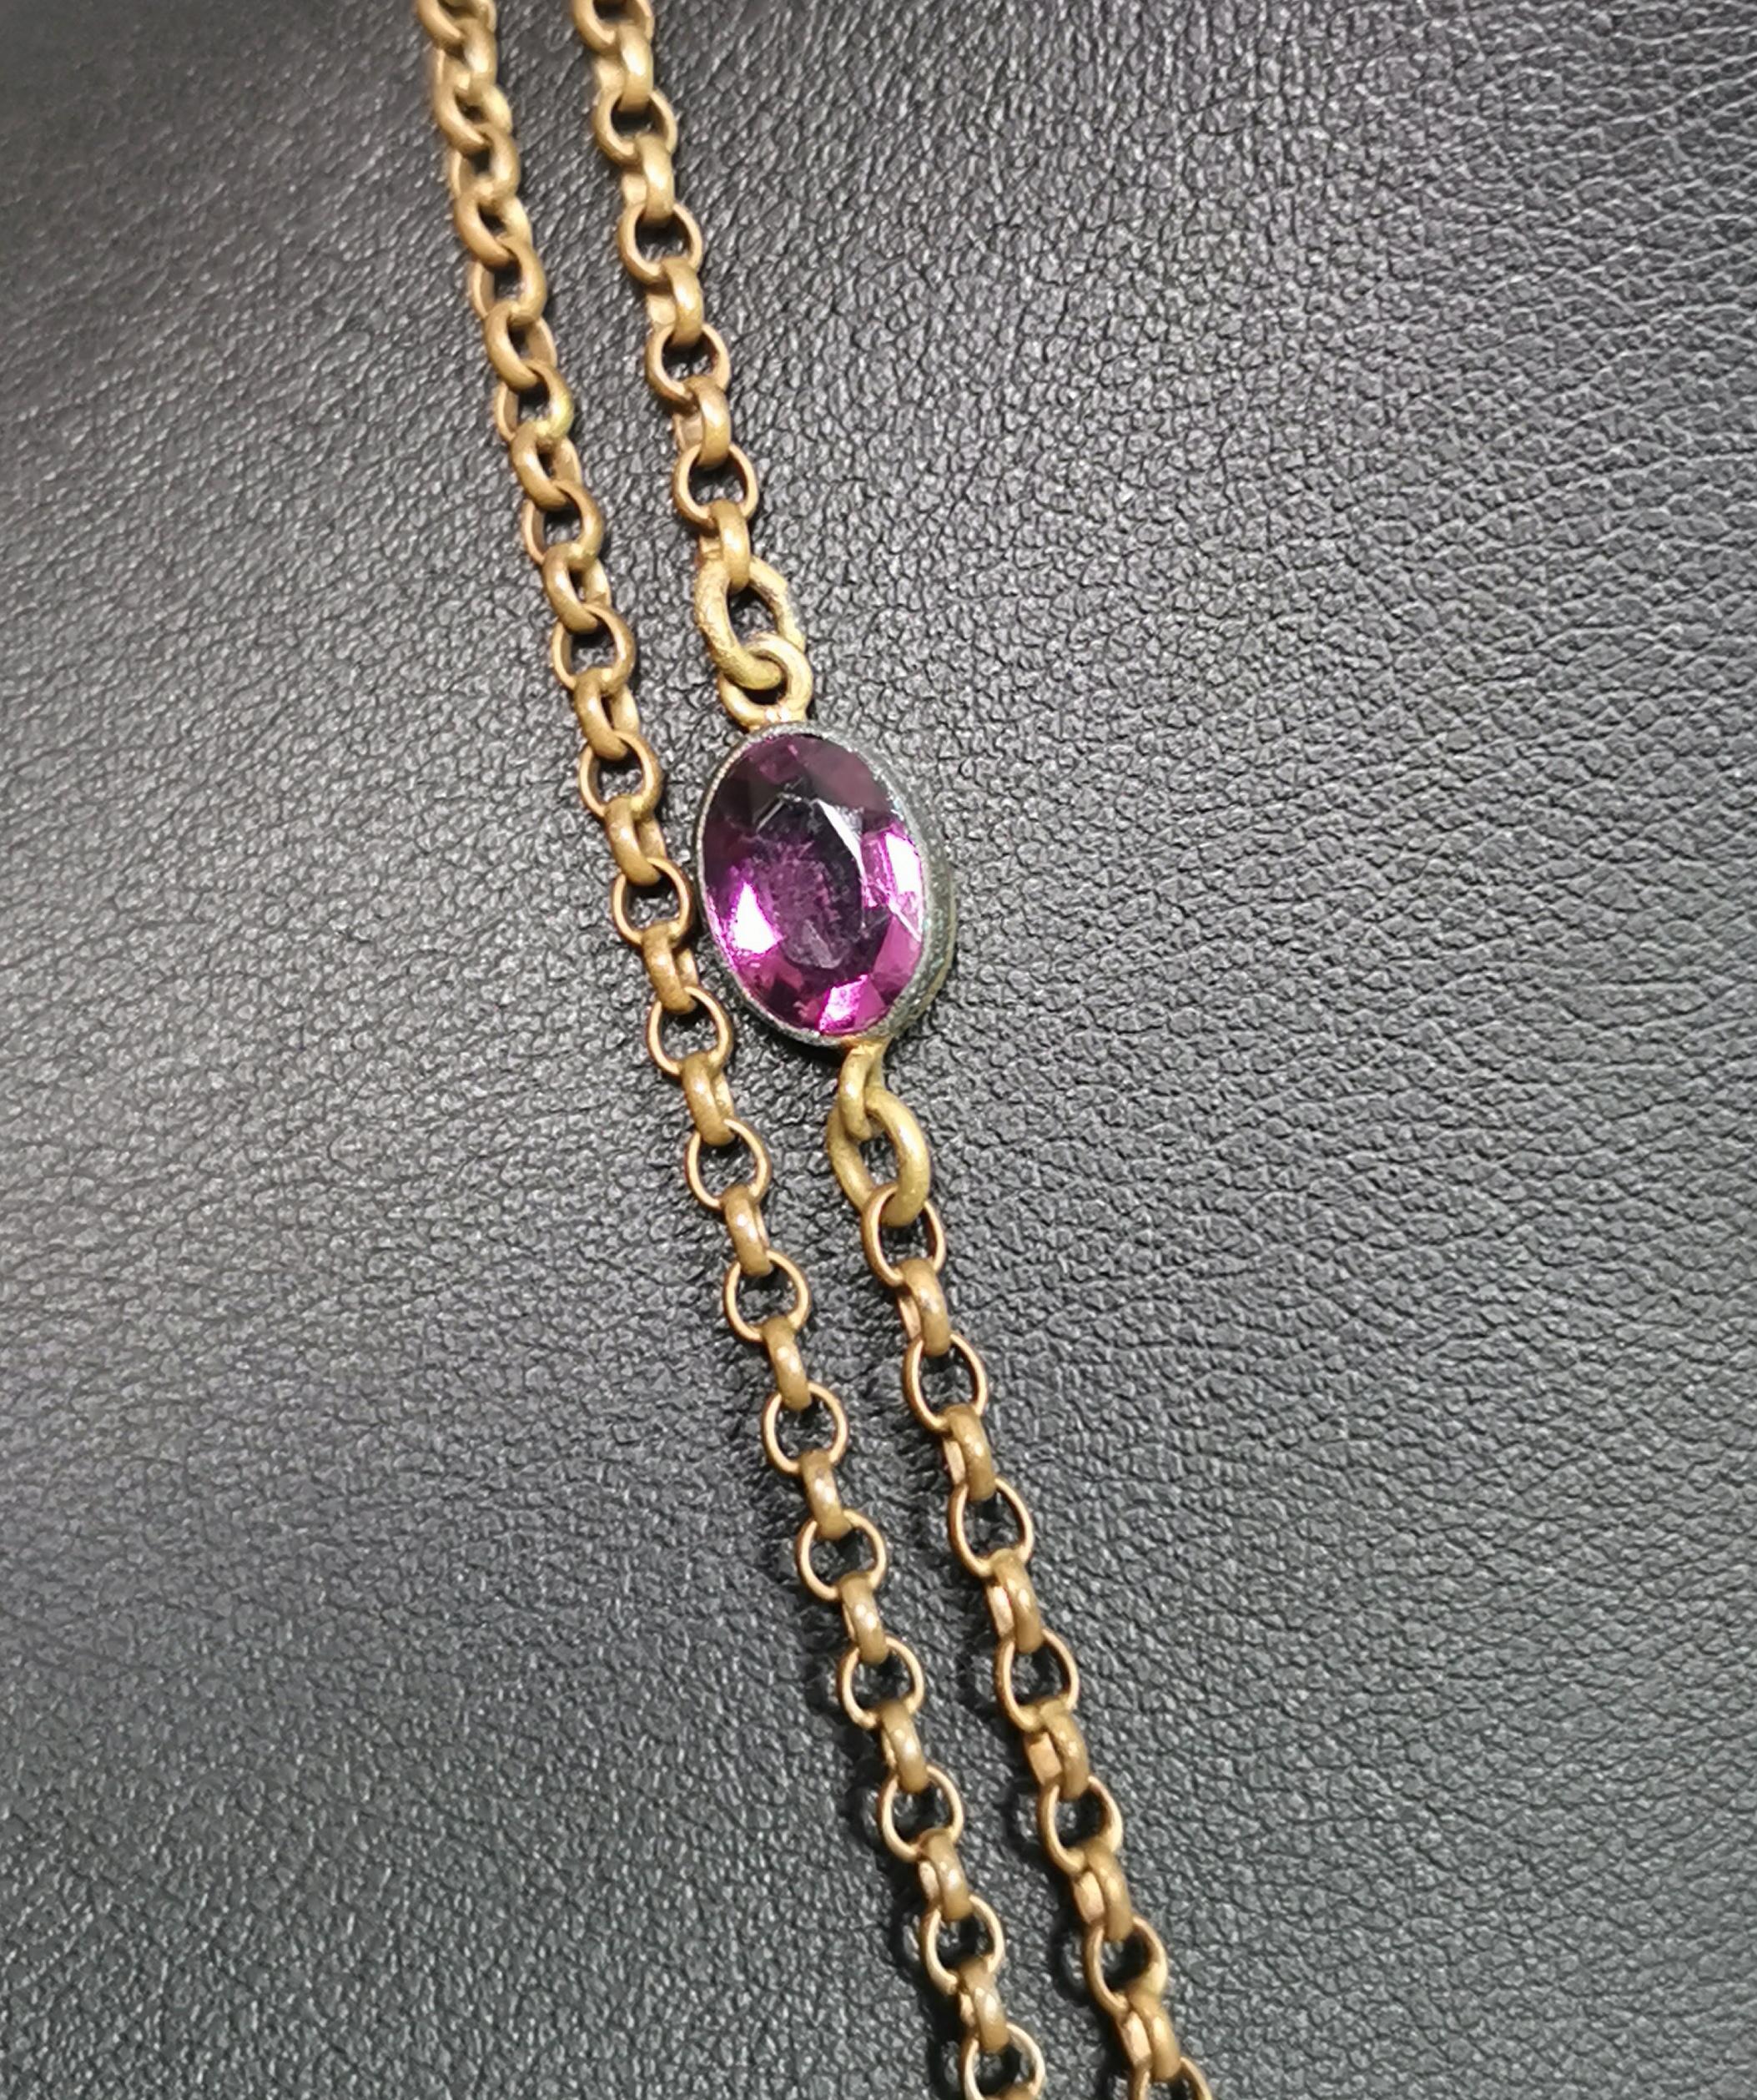 Antique Edwardian purple paste sautoir necklace, gold plated long chain  For Sale 3